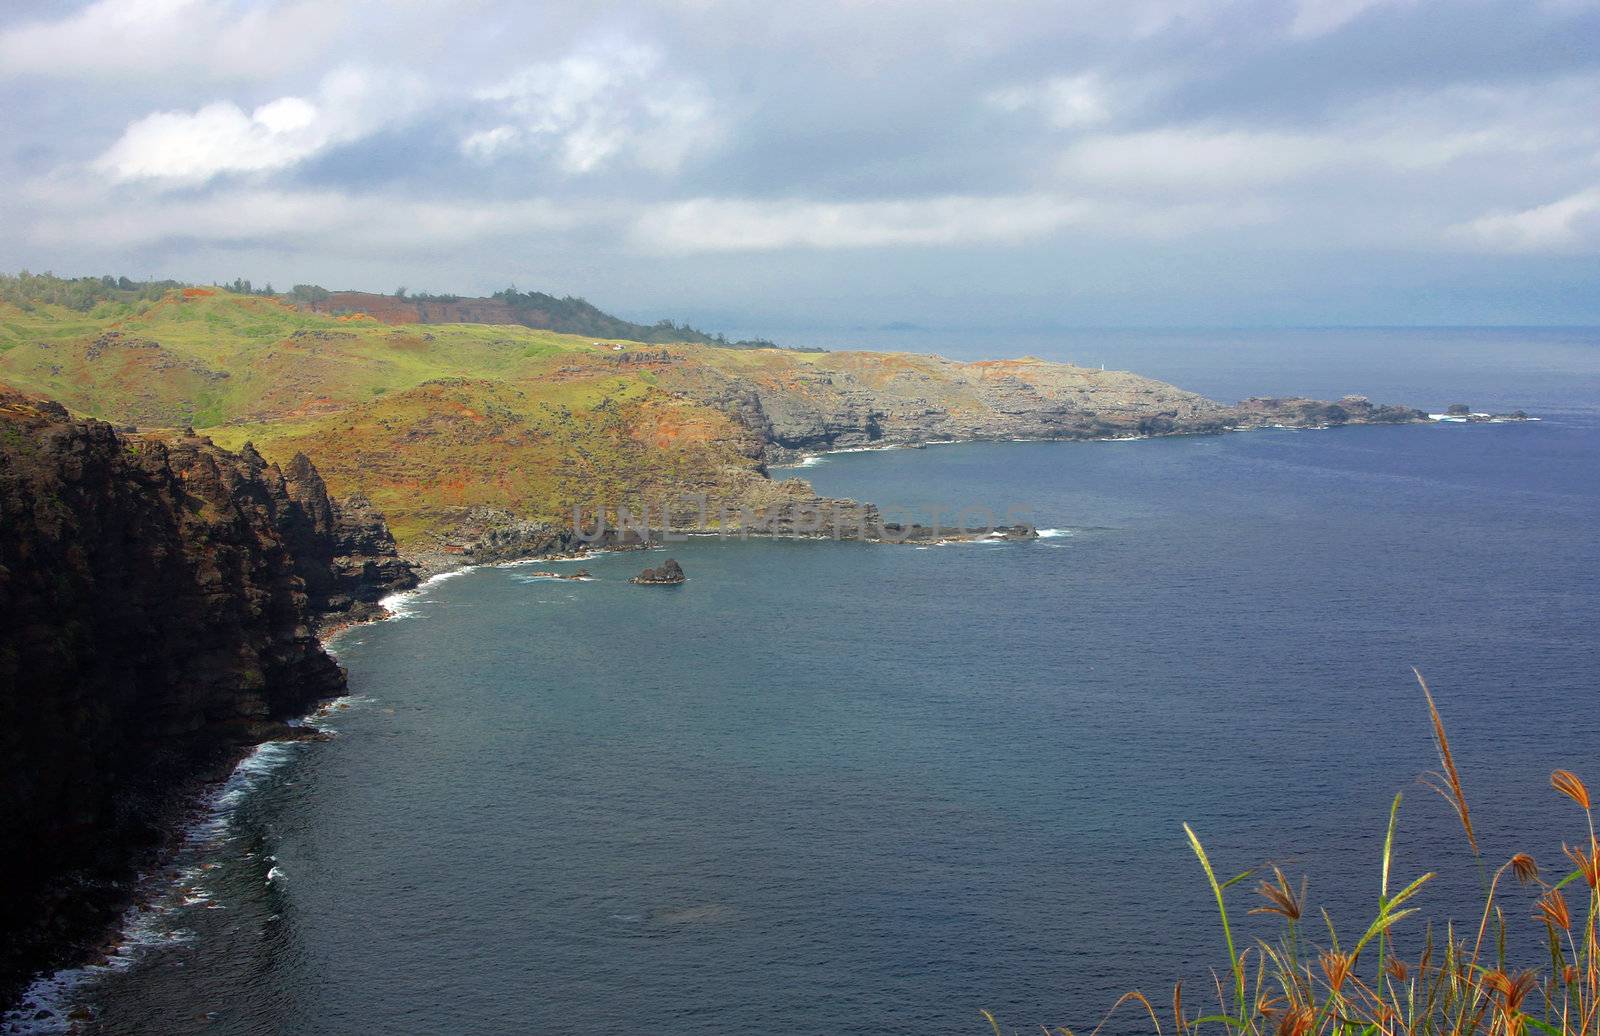 North Maui Coastline by KevinPanizza